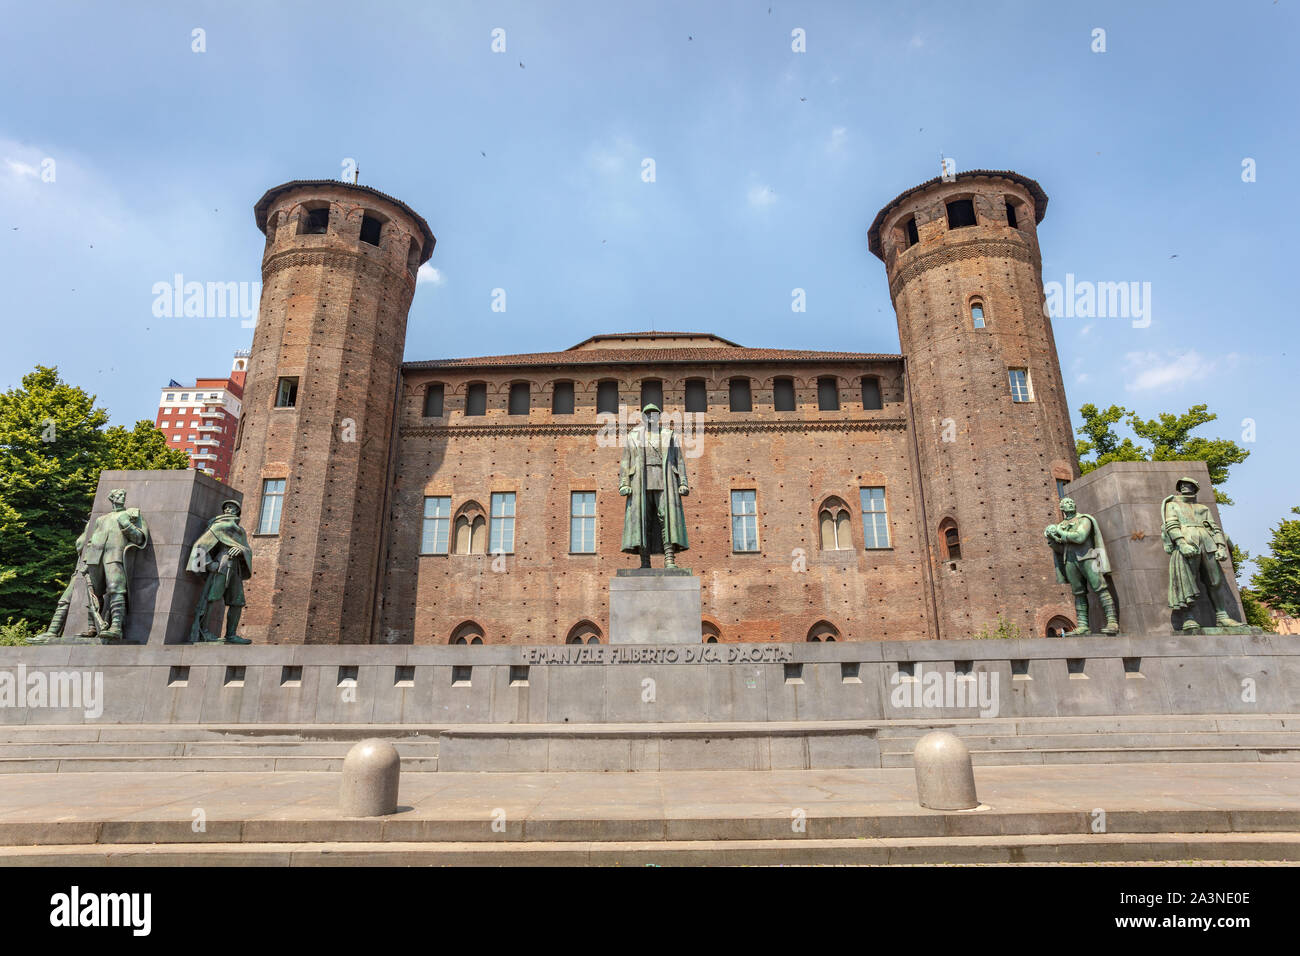 Monumento del Principe Emanuele Filiberto, Duca d'Aosta di fronte al Castello di Acaja a Torino Italia Foto Stock